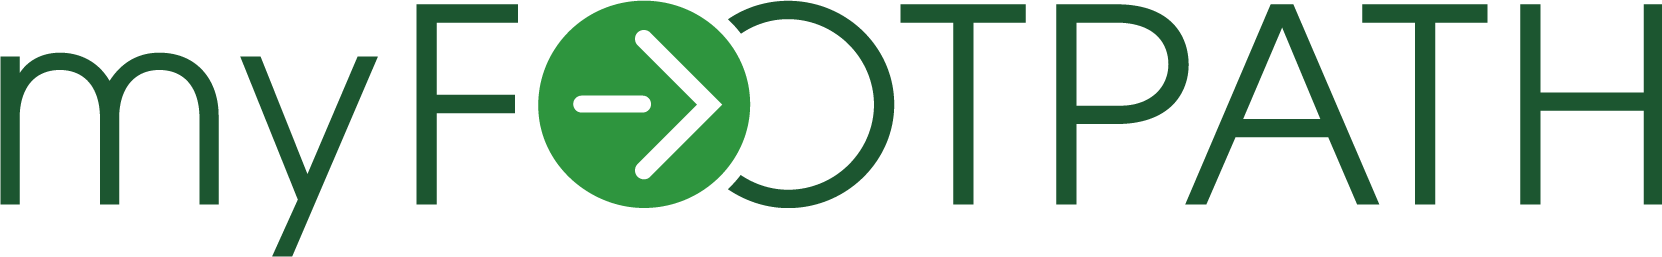 myFootpath logo